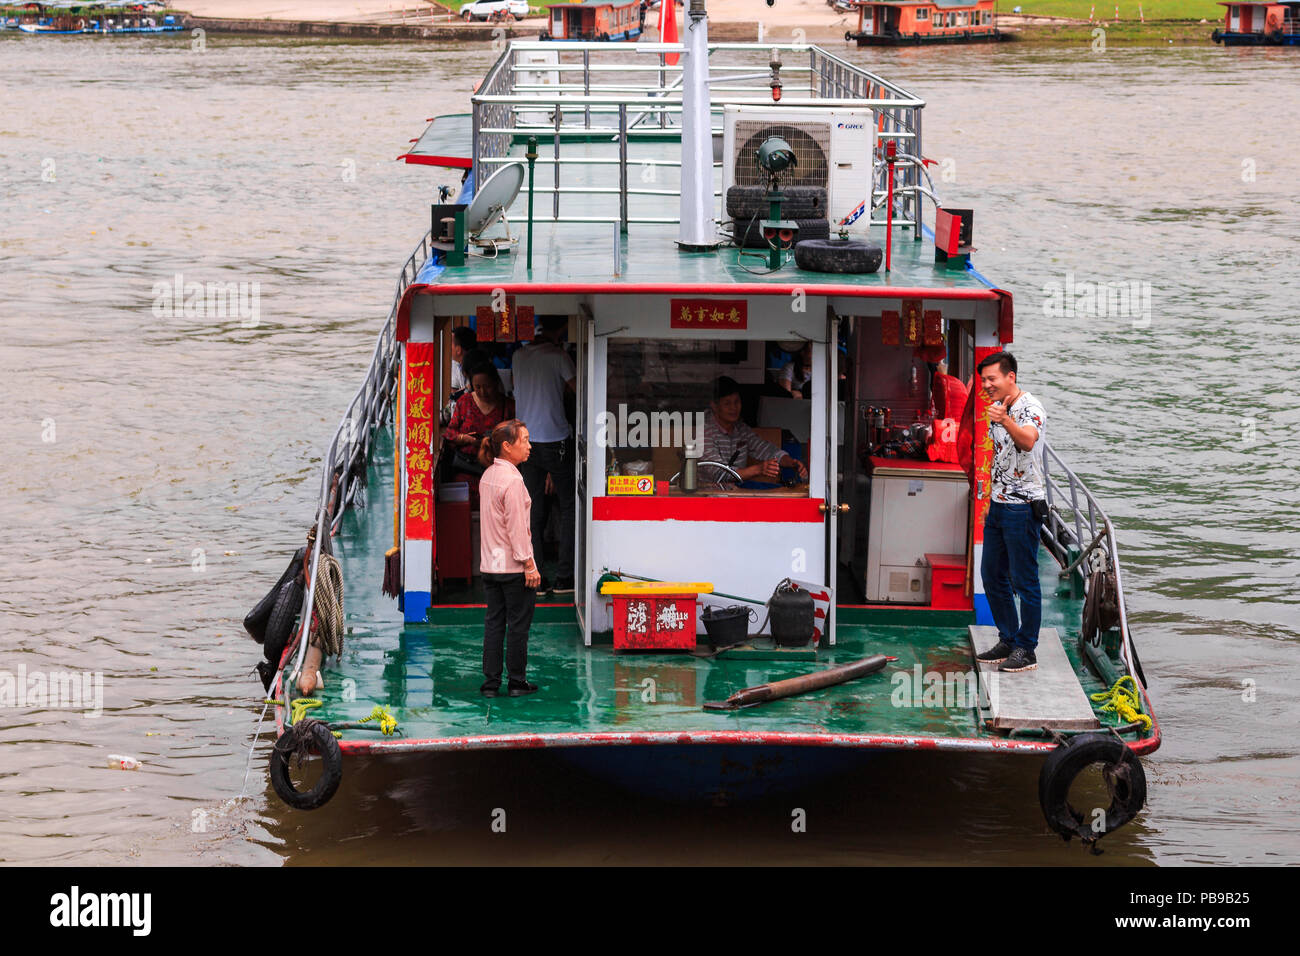 XINGPING, CHINE - 11 MAI 2018 : un bateau de plaisance de touristes quitte l'embarcadère sur la rivière Li connu ainsi que rivière Lijiang qui est en ville de Xinping Banque D'Images